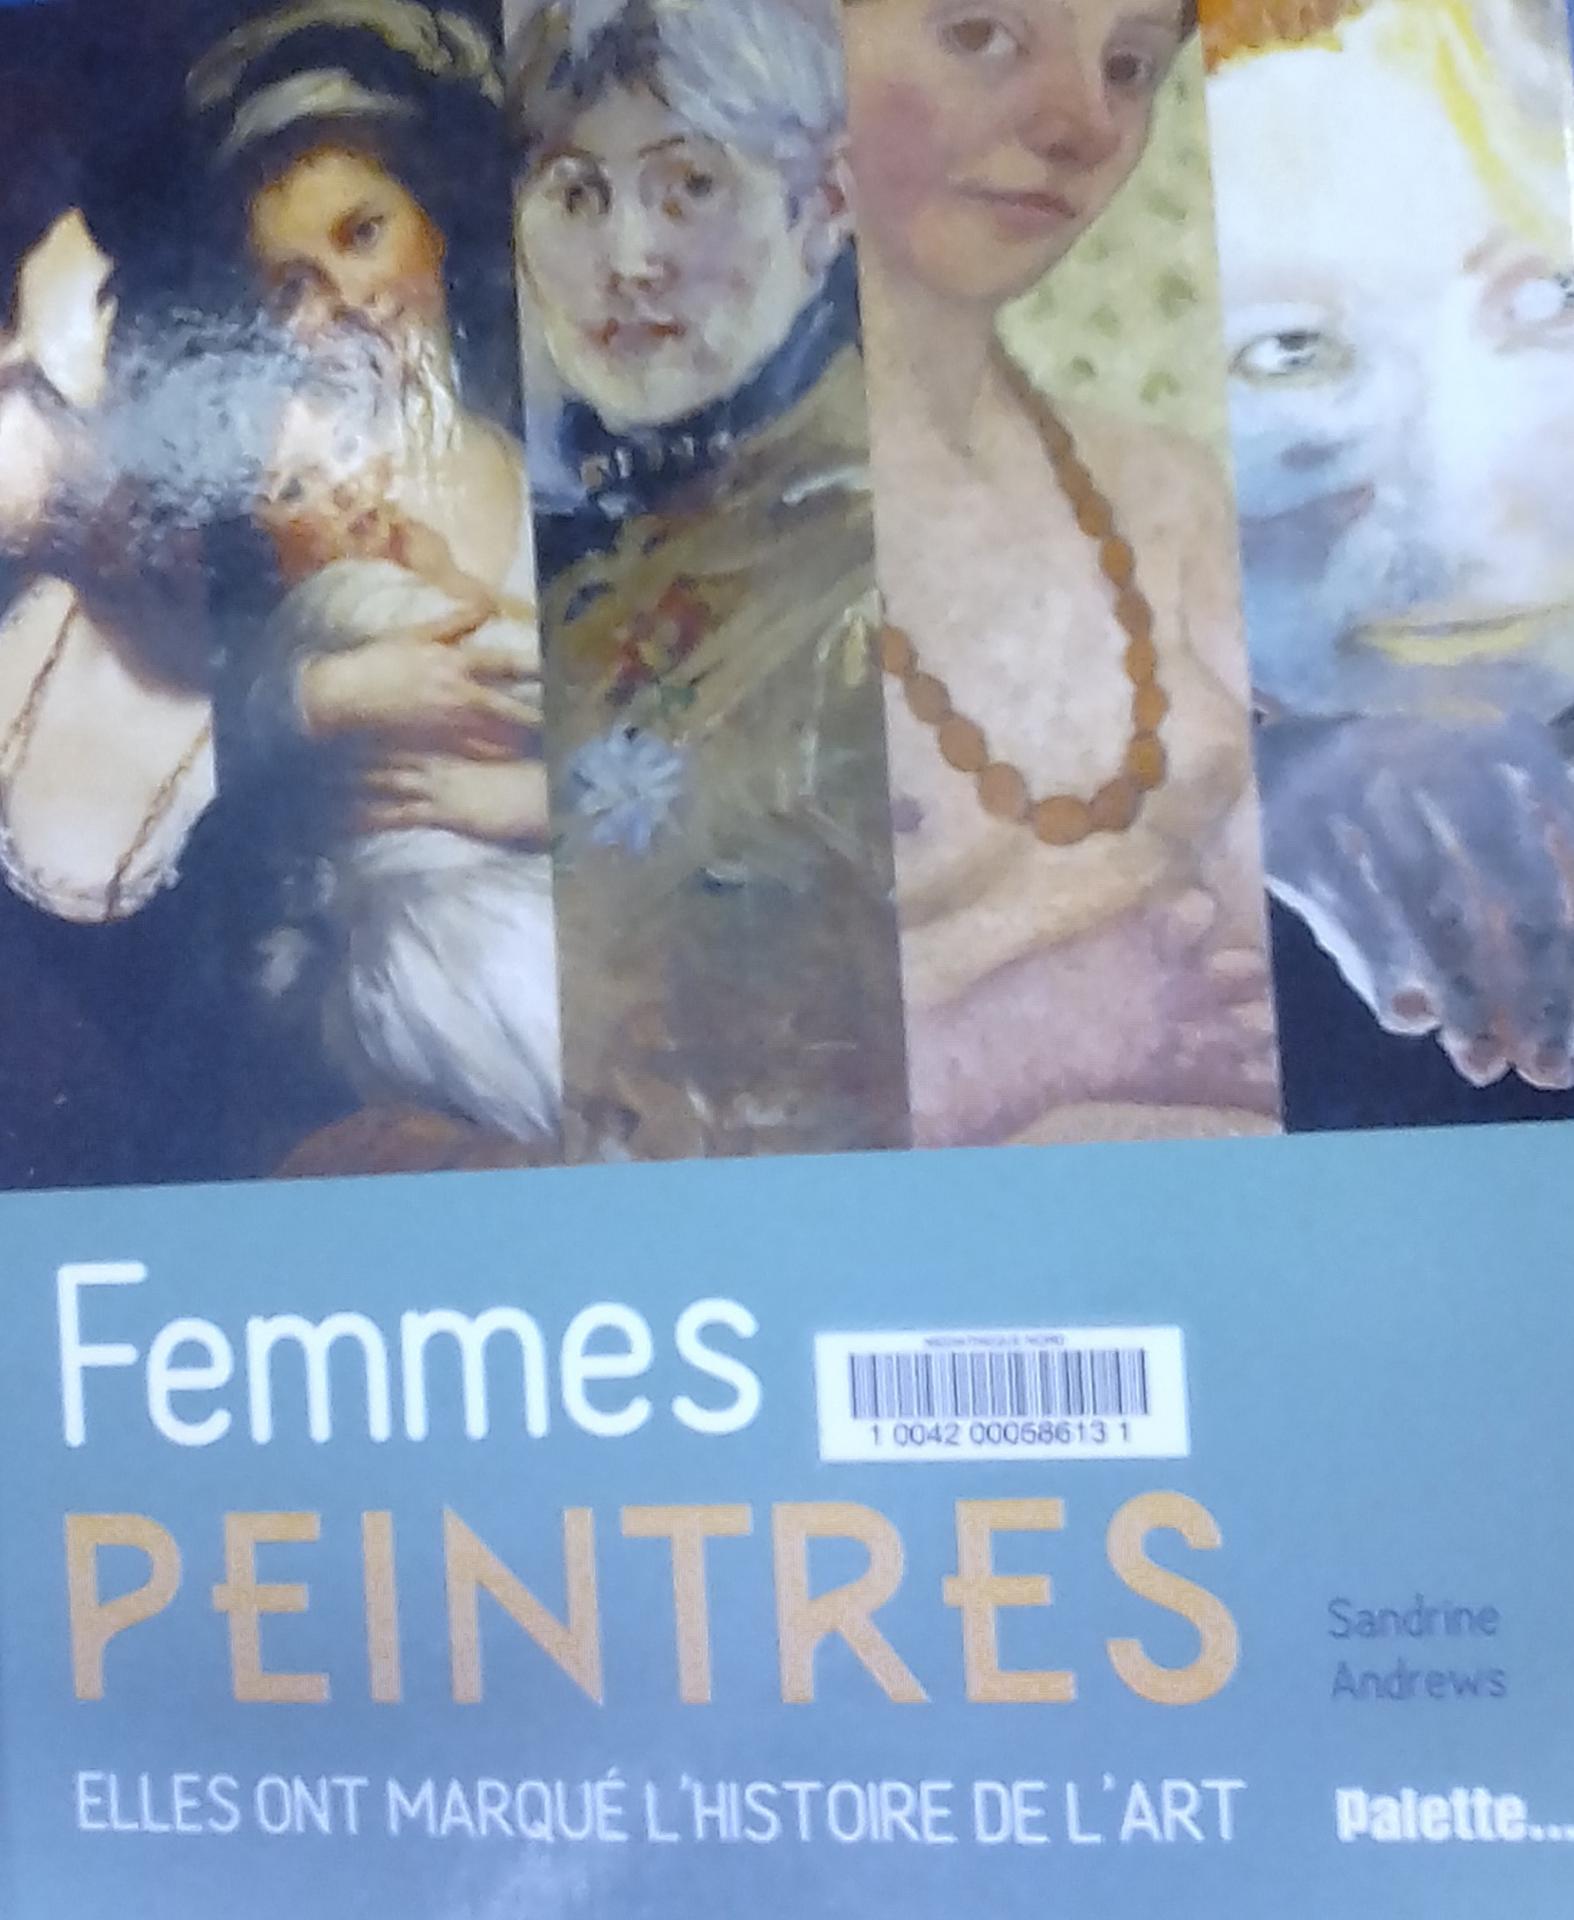 Femmes peintres de Sandrine Andrews, Palette, 2018